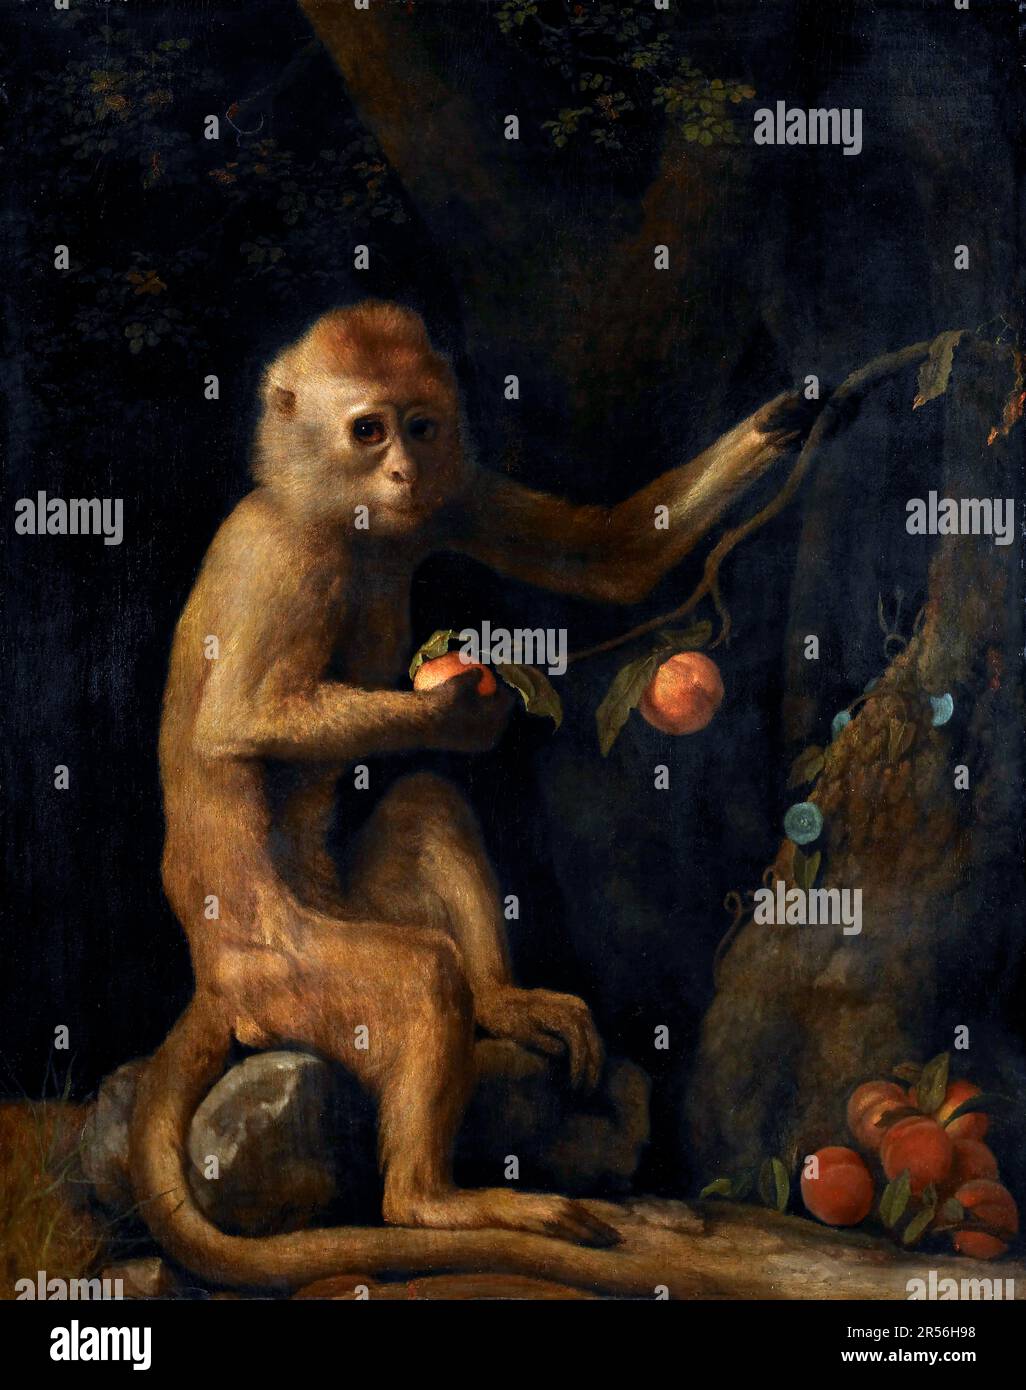 Un singe de George Stubbs (1724-1806), huile sur panneau, 1799 Banque D'Images